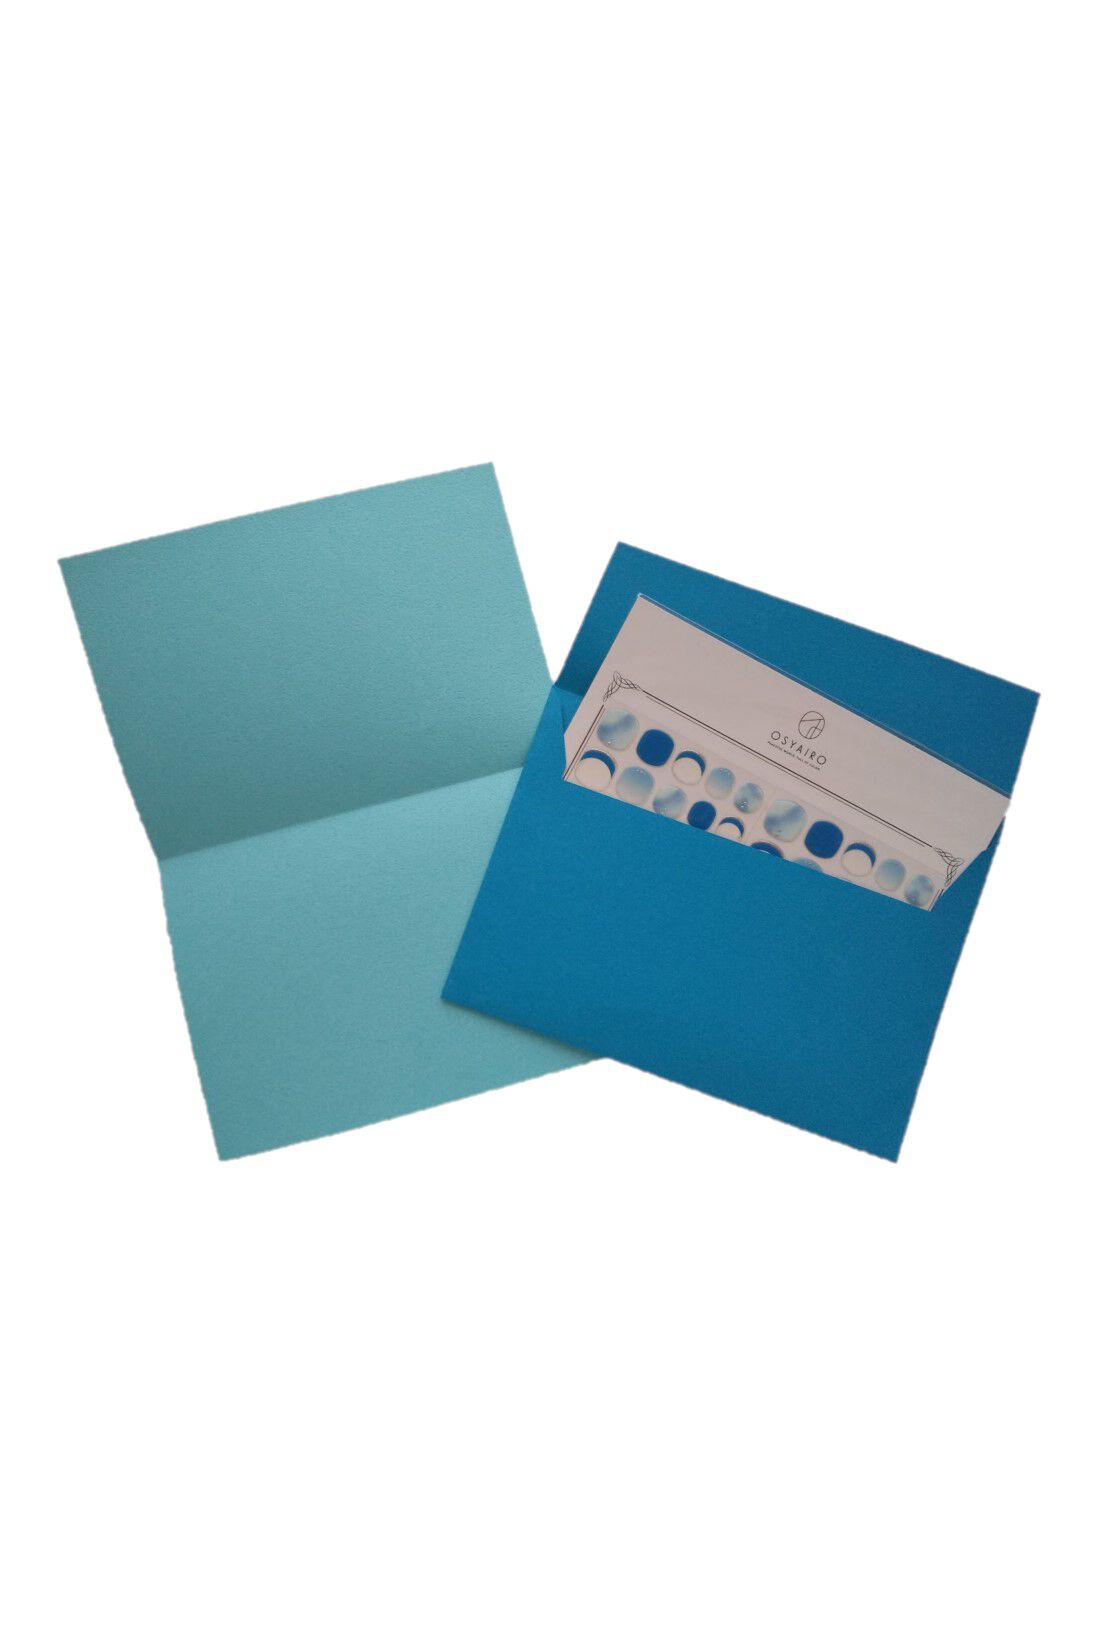 OSYAIRO|OSYAIRO 紙の専門商社竹尾が選ぶ　色を楽しむ紙セットの会〈青〉|A4で作った封筒にはOSYAIROのネイルシールがちょうどいい感じに収まるので、青担当、青推しの友だちにプレゼントしても。(^^)